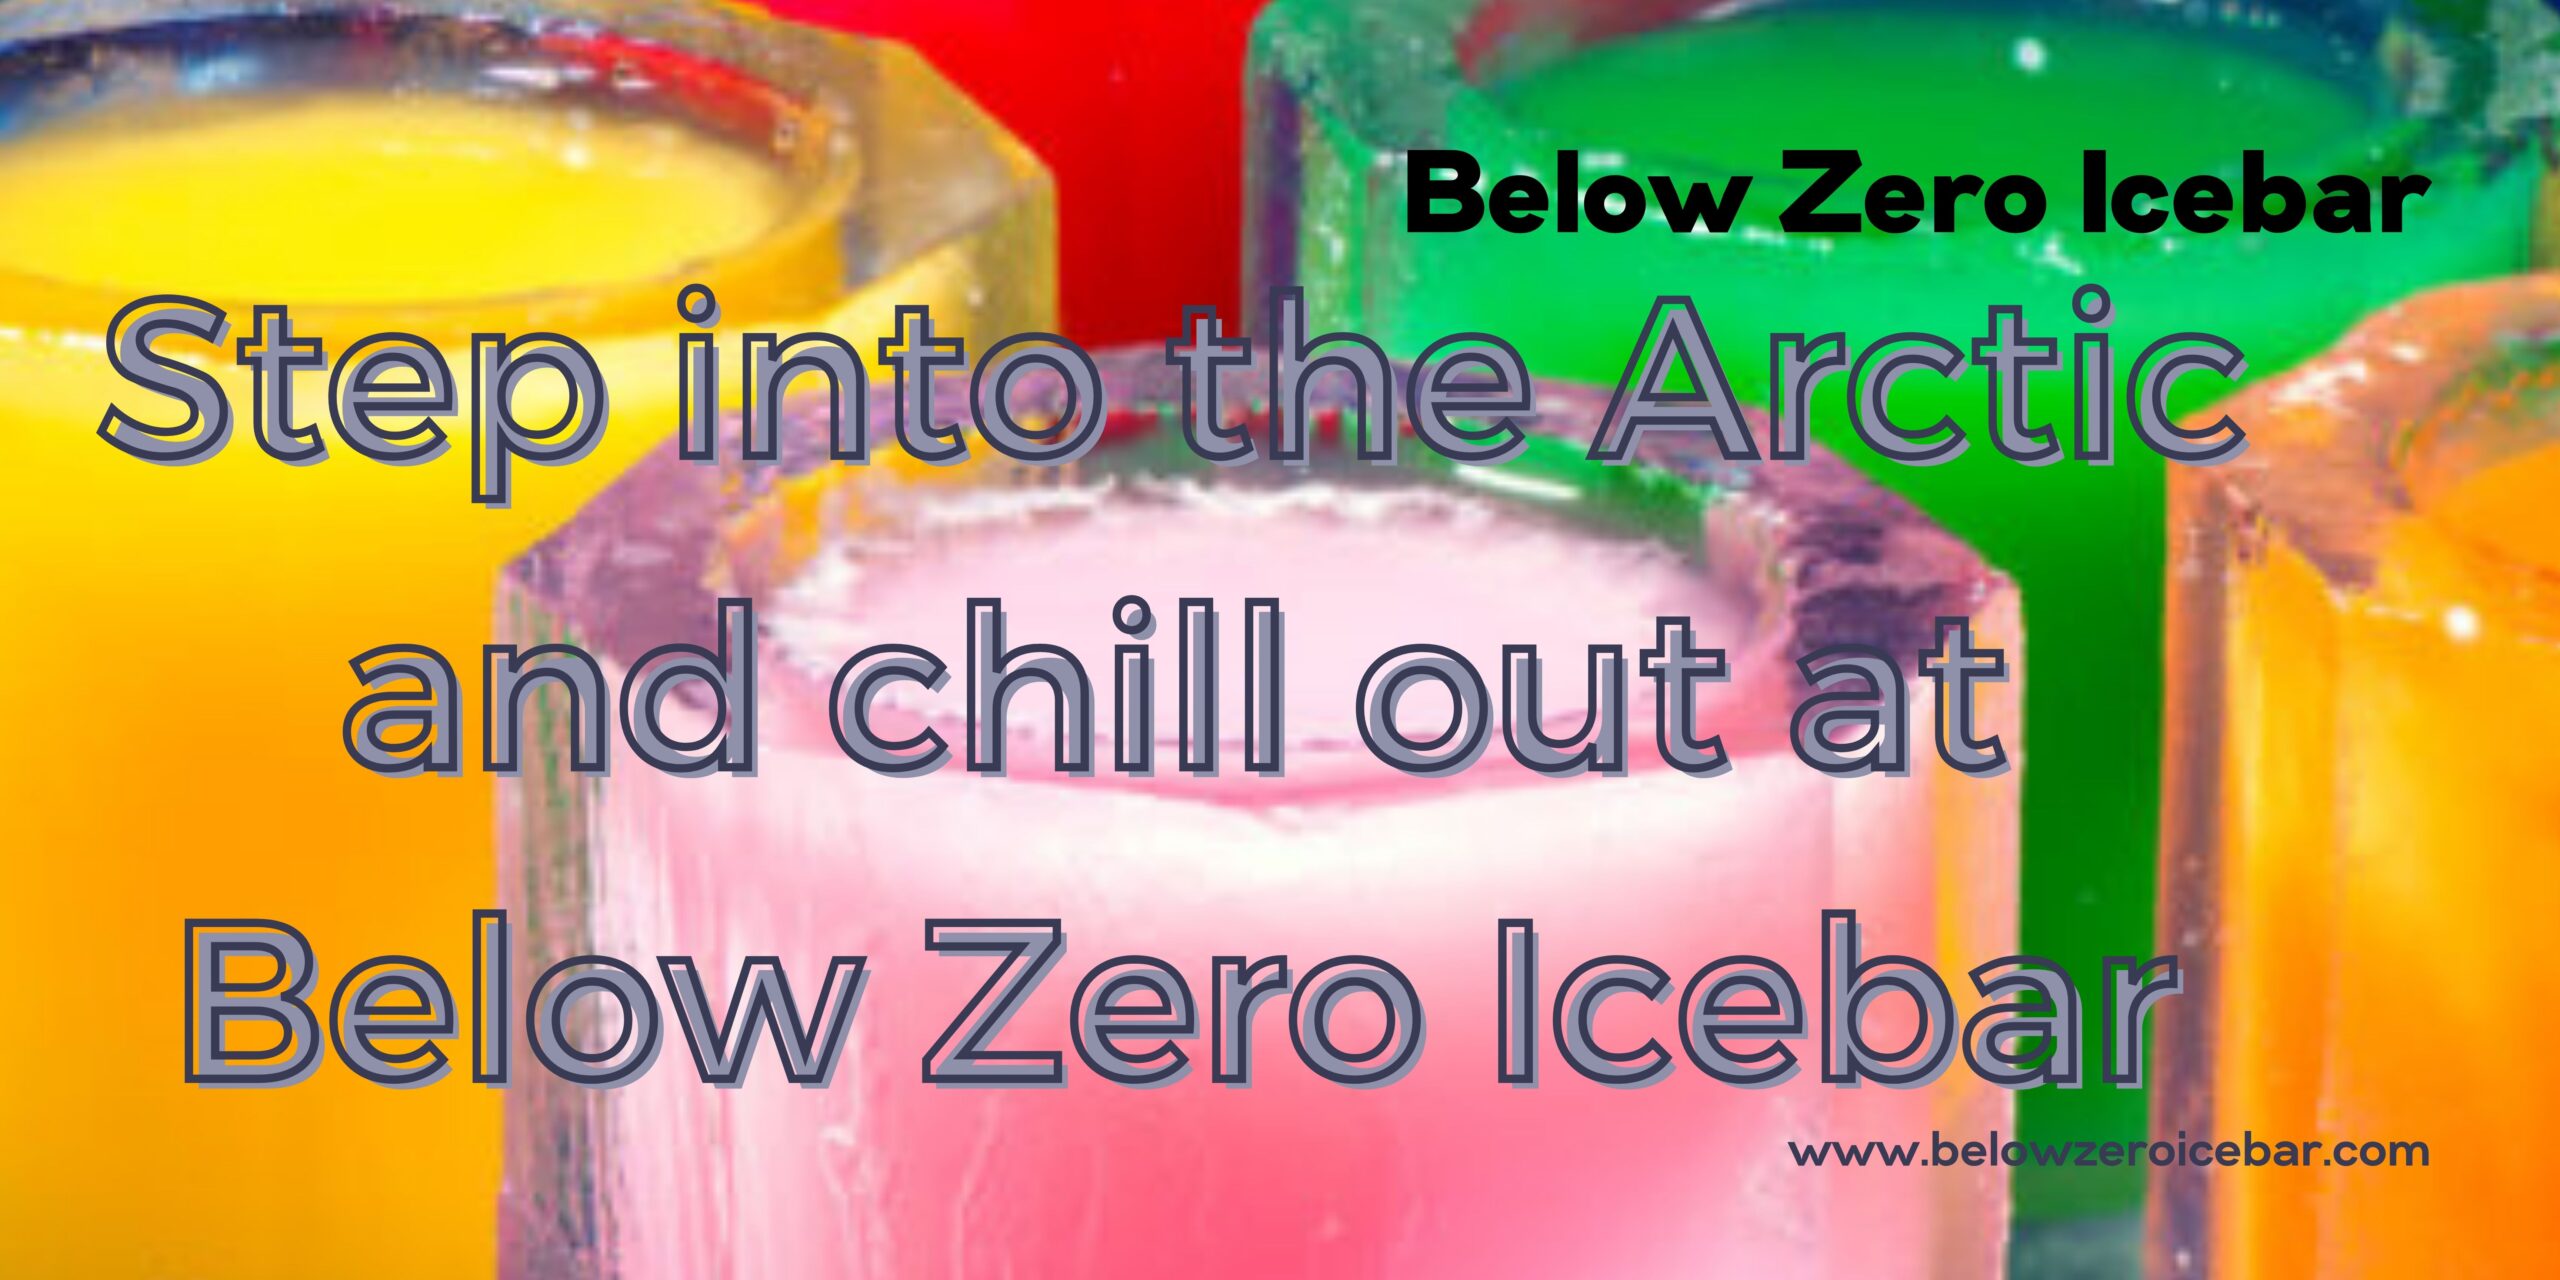 Below Zero Icebar